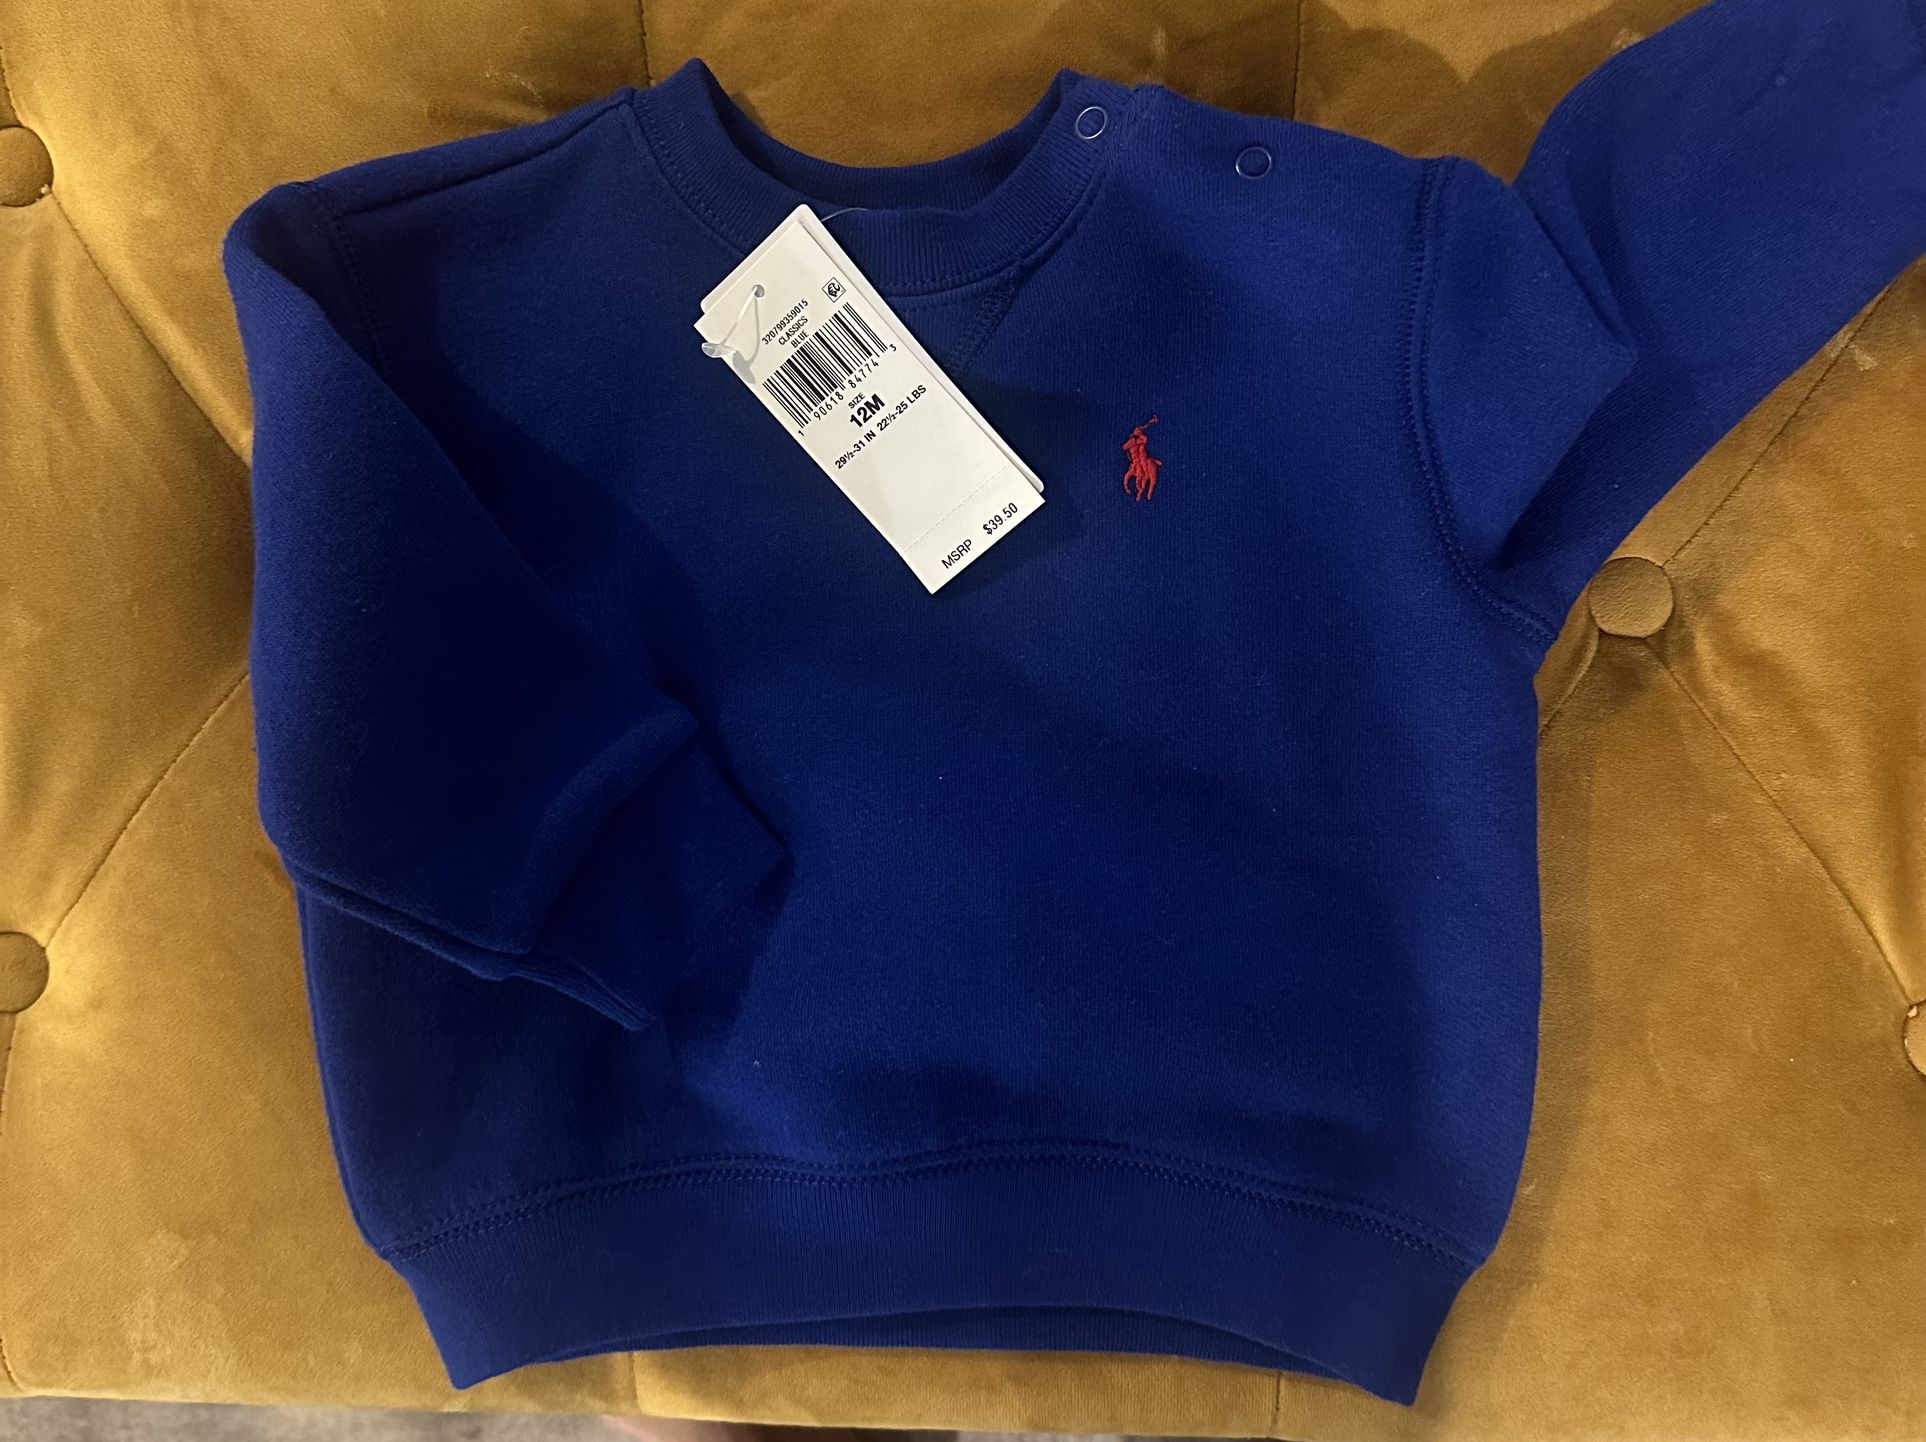 Polo Sweatshirt 12 Month